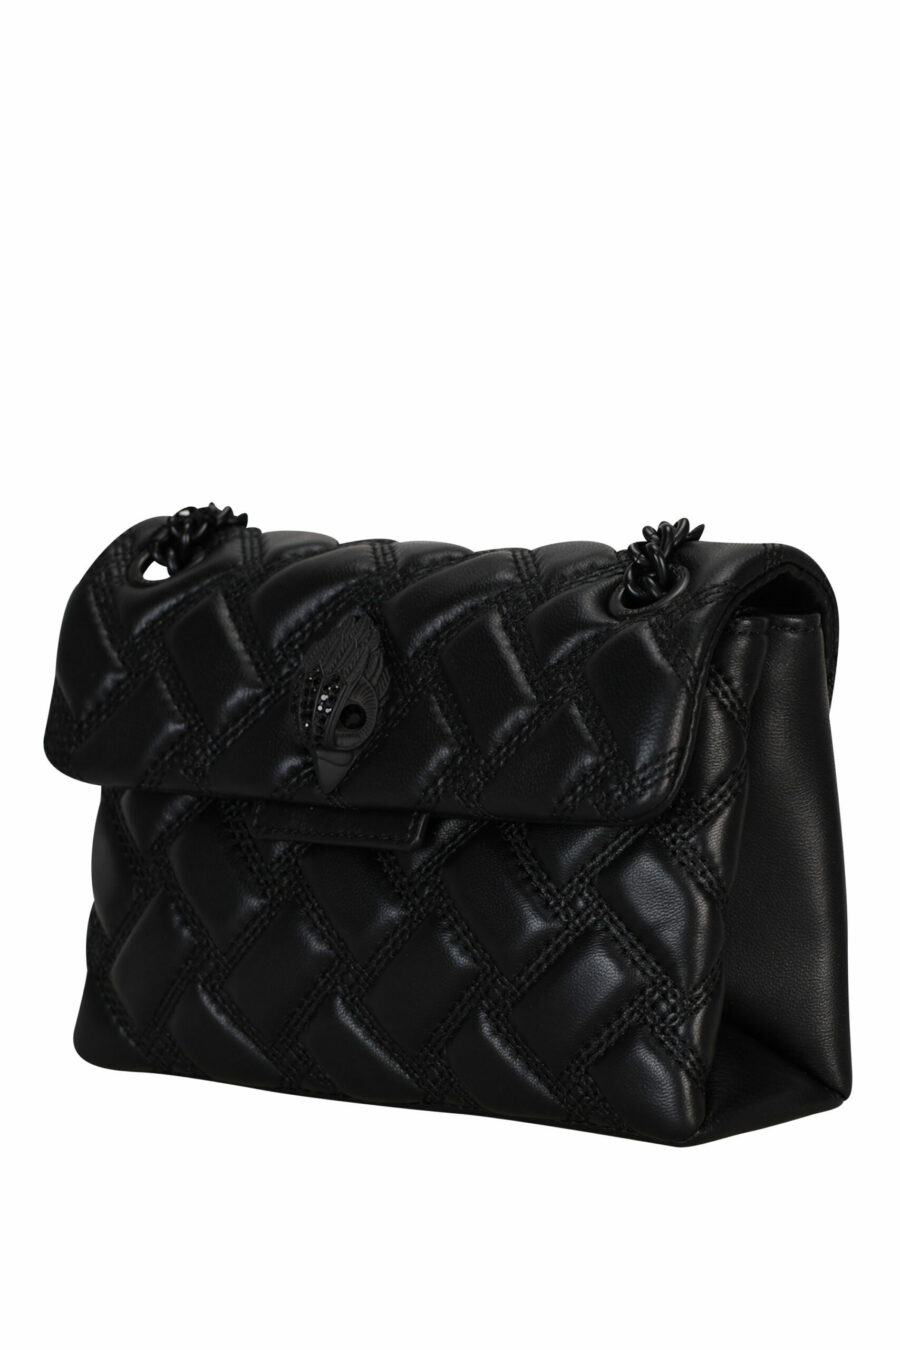 Mini sac à bandoulière noir avec lignes diagonales et logo de l'aigle noir avec cristaux noirs - 5020413709135 1 échelle